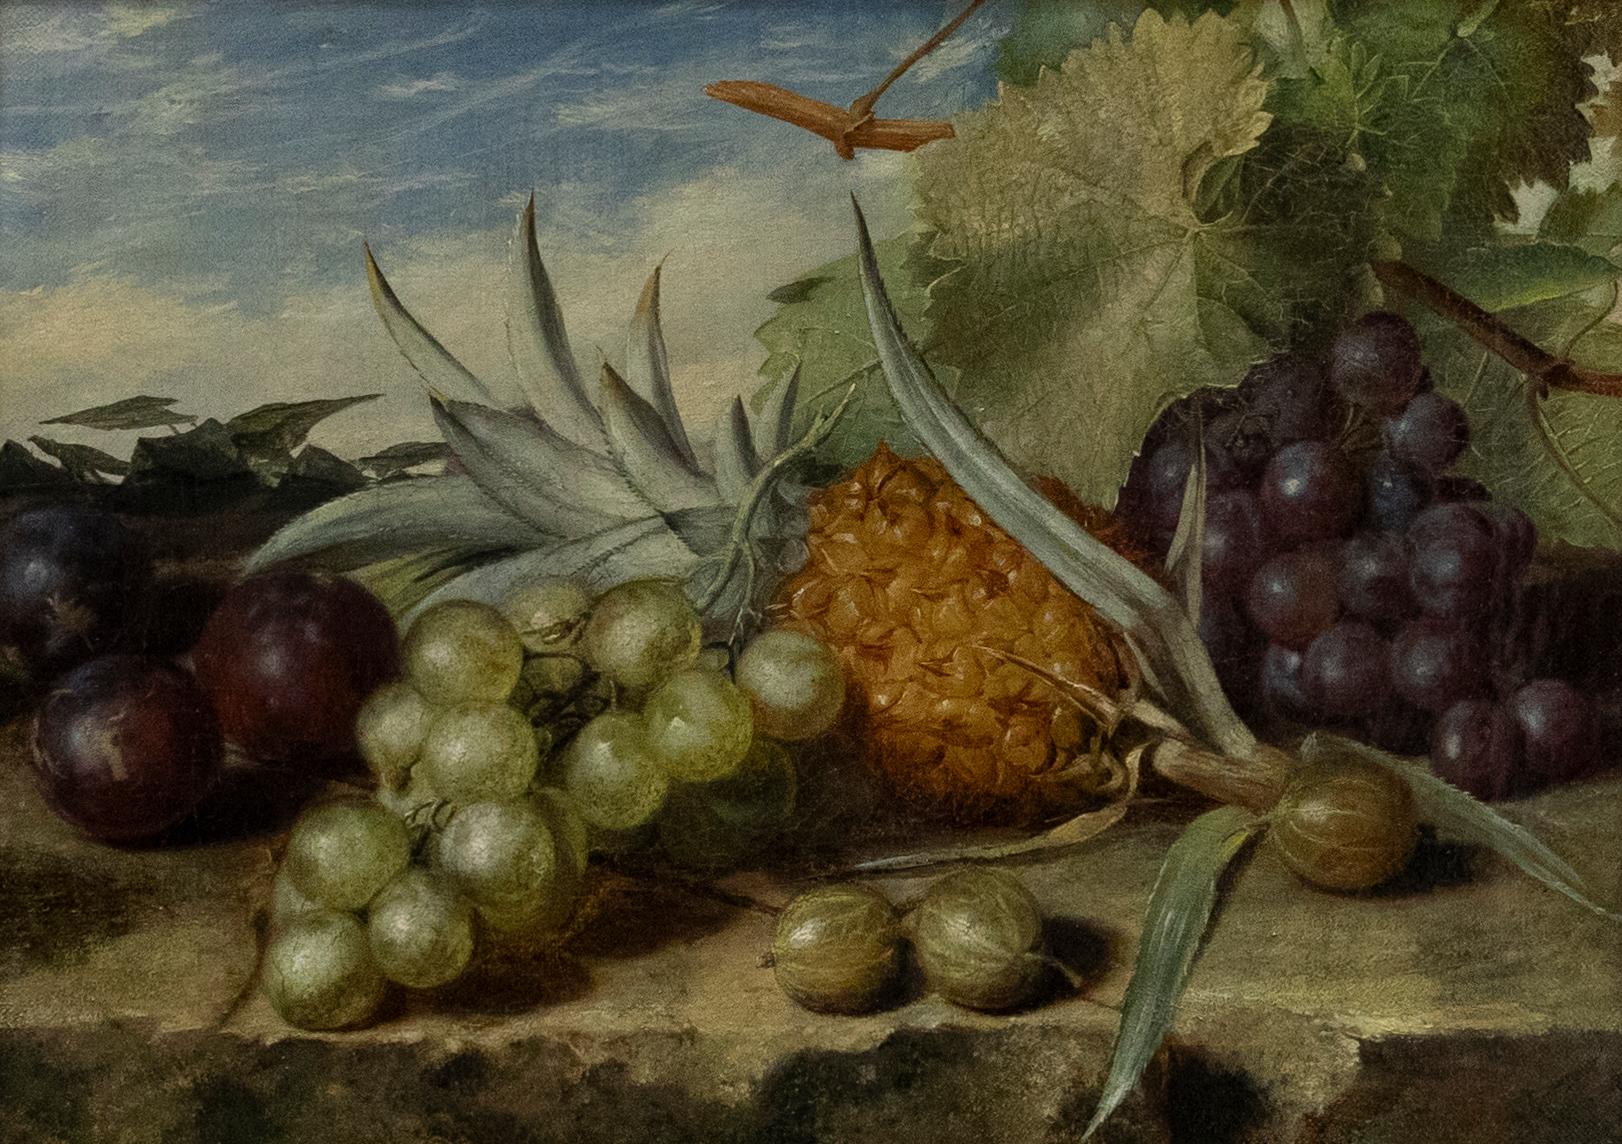 James Tibbits – Gerahmtes Ölgemälde, Stillleben mit Früchten, 1866 – Painting von Unknown